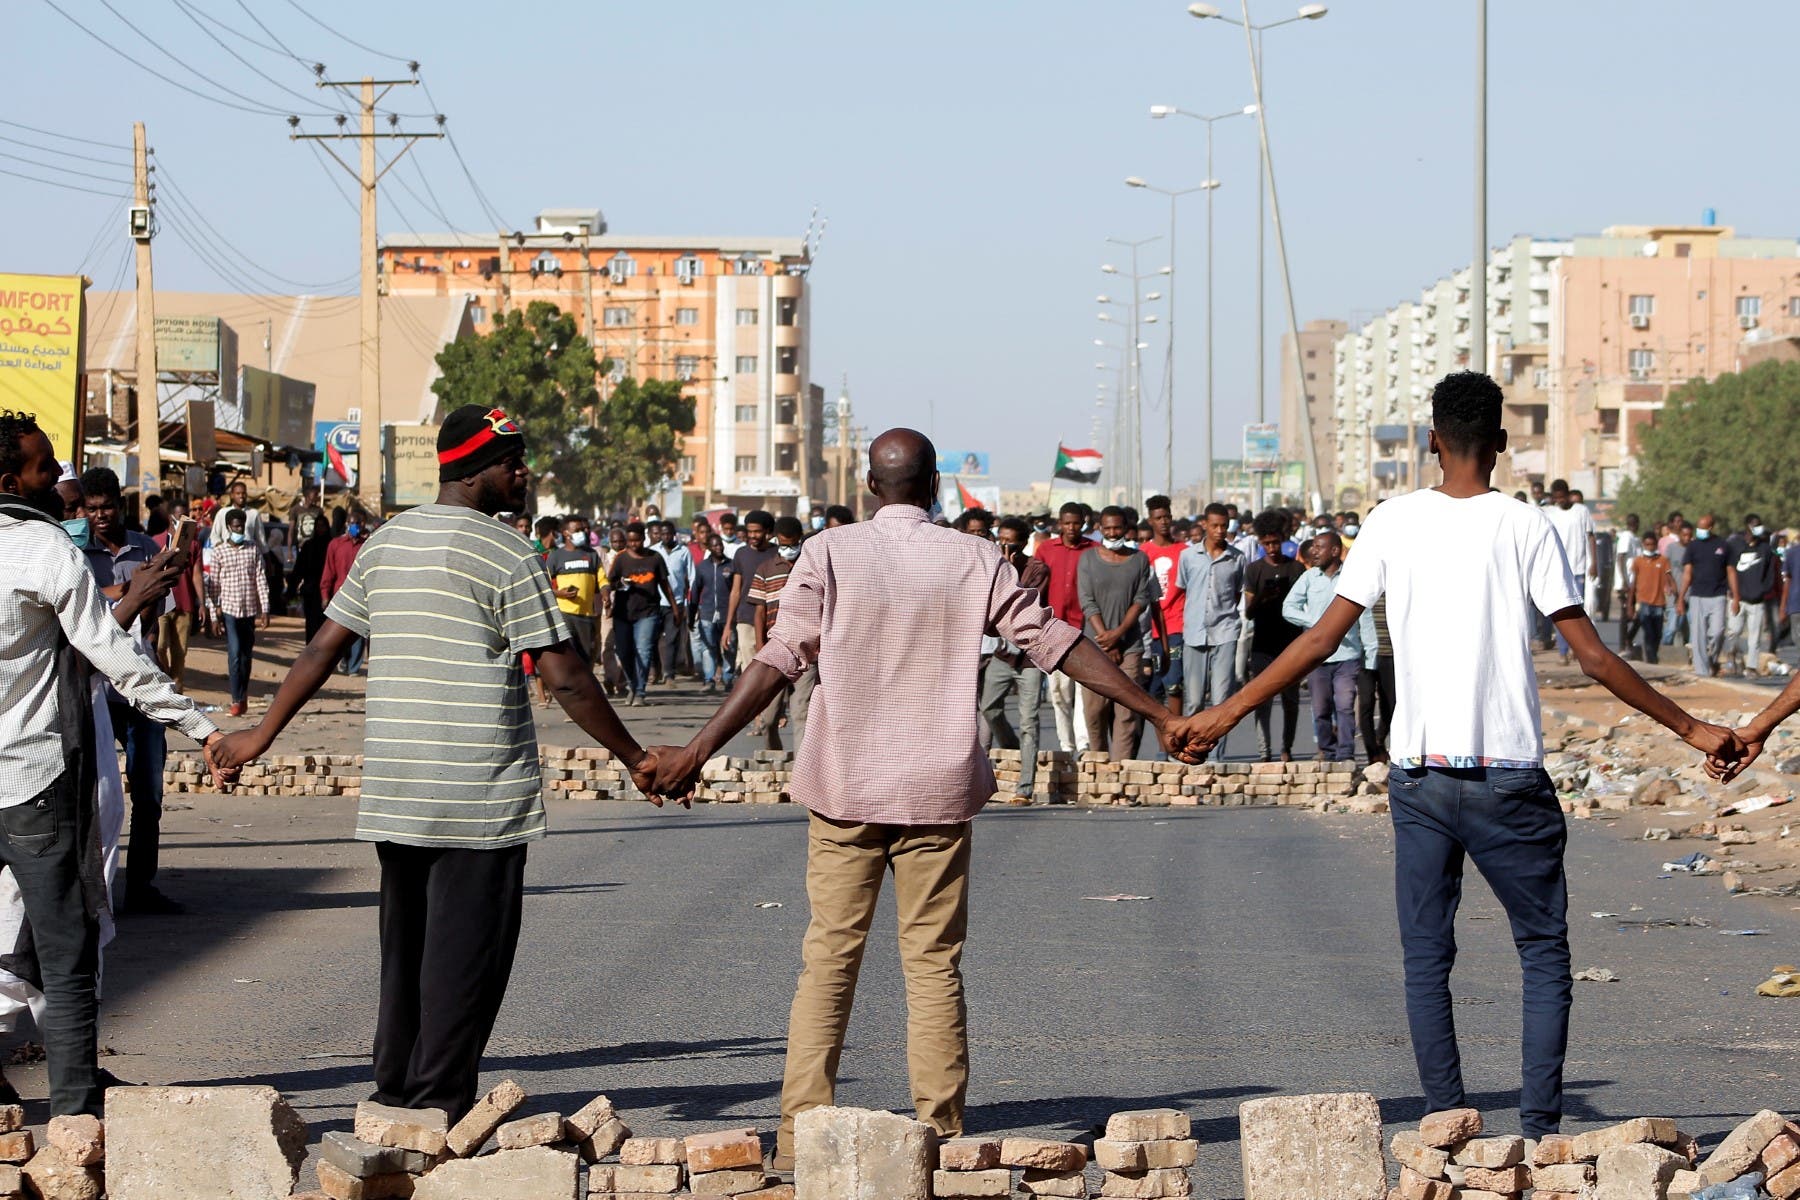 تظاهرة في 21 نوفمبر في الرطوم طالبت بعودة المدنيين للحكومة في السودان